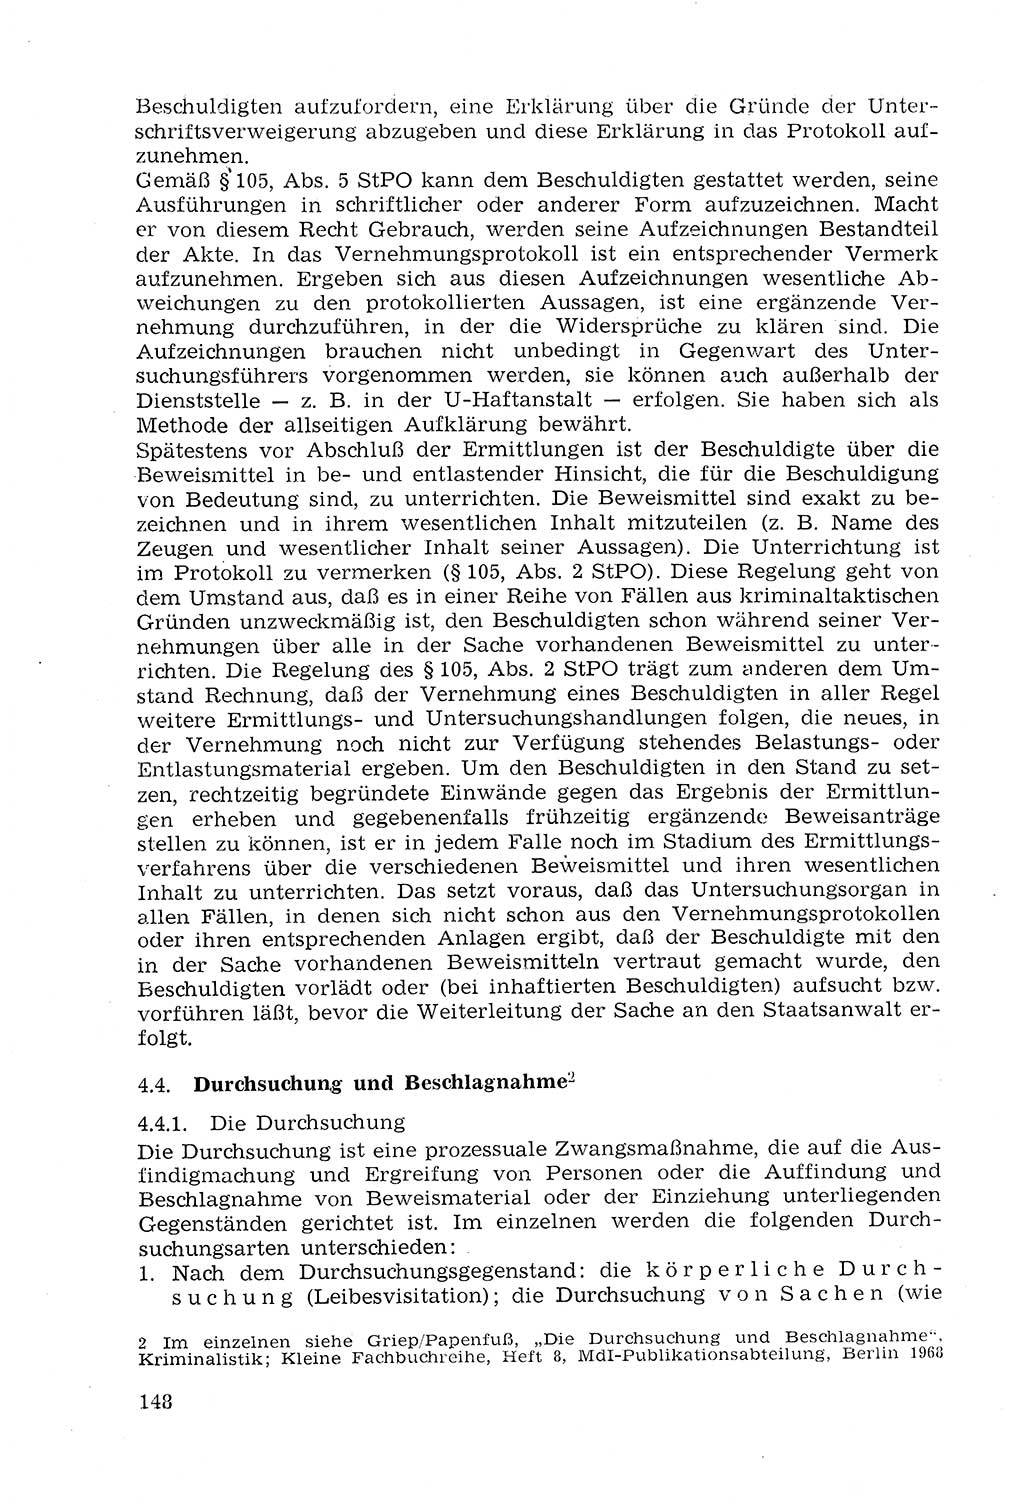 Strafprozeßrecht der DDR (Deutsche Demokratische Republik), Lehrmaterial 1969, Seite 148 (Strafprozeßr. DDR Lehrmat. 1969, S. 148)